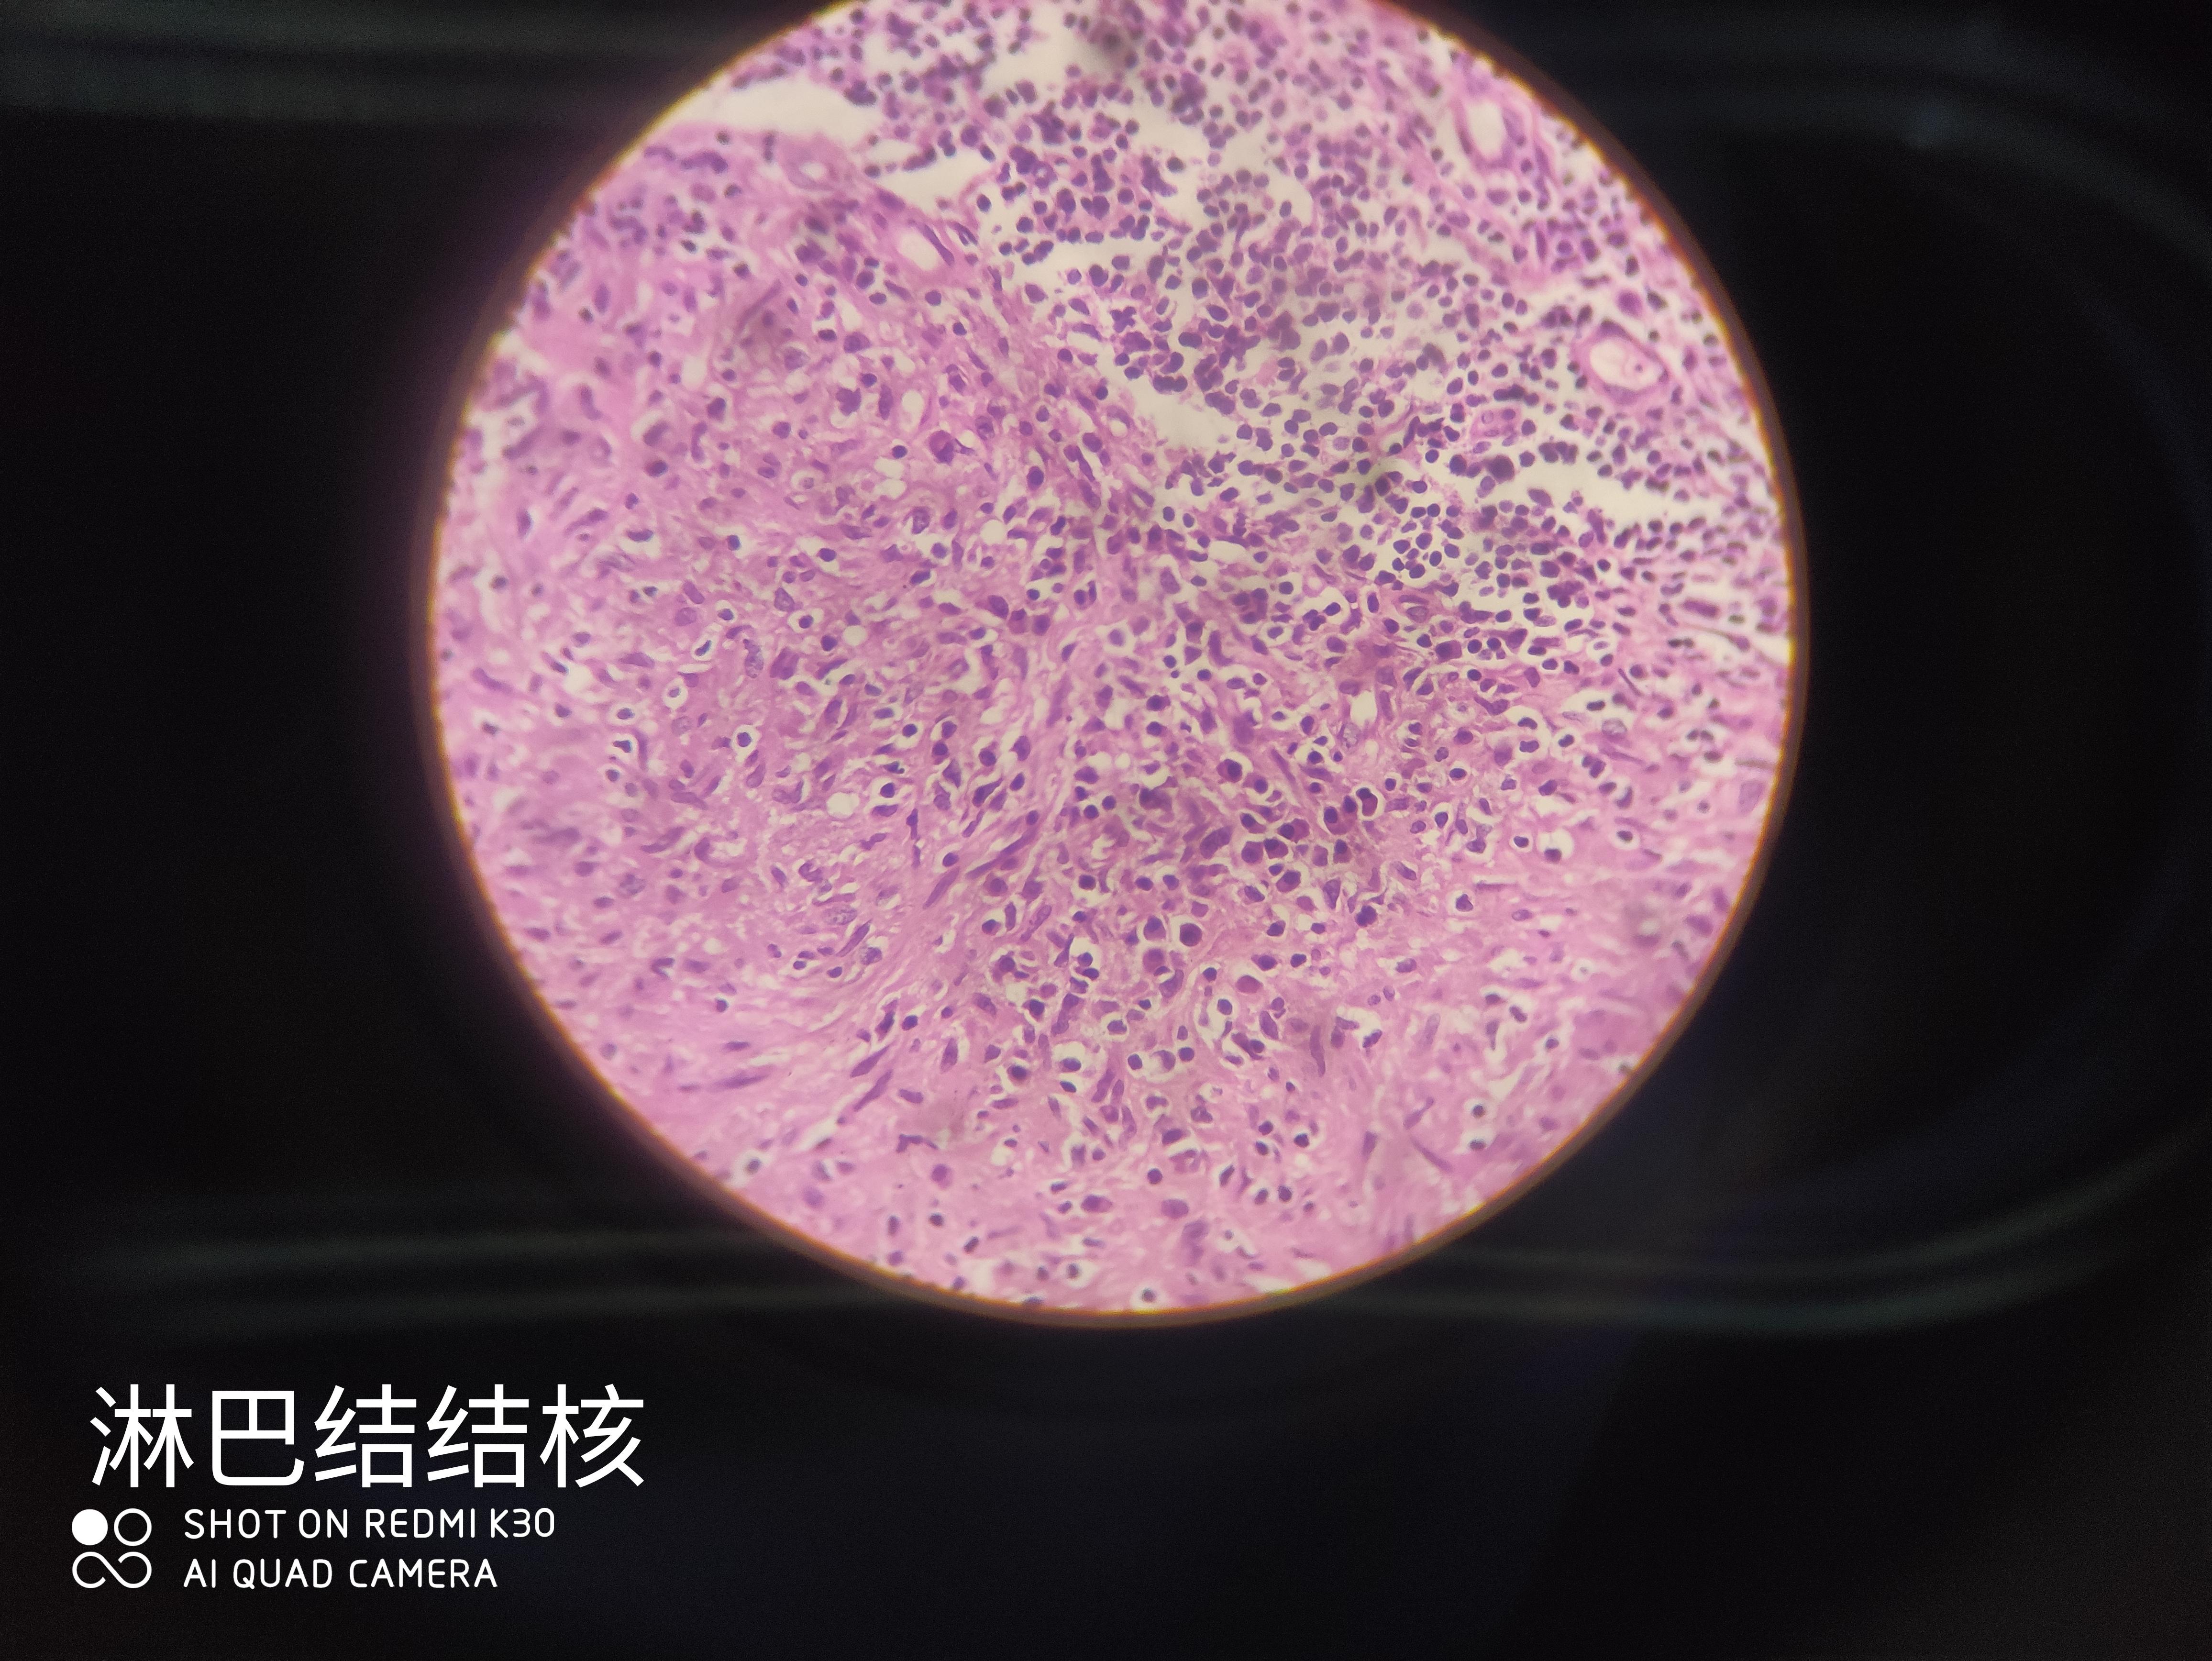 类上皮细胞也不是空泡状的蜂窝织炎性阑尾炎注意胞浆与胞核的形状与